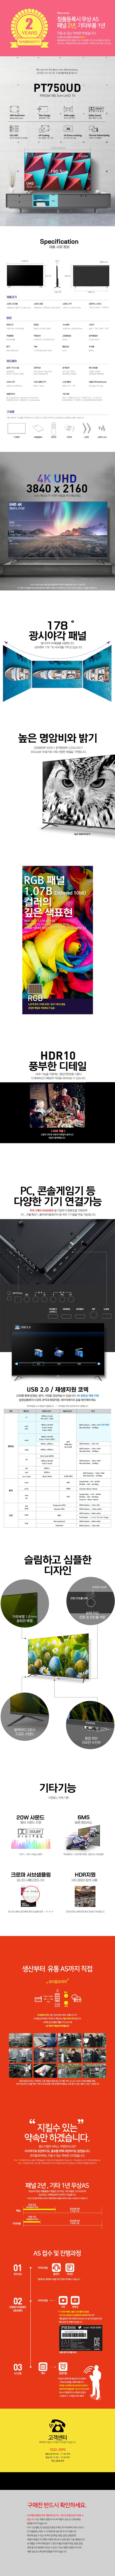 프리즘 4K UHD LED TV190.5cm(75인치) · PT750UD · 스탠드형 · 방문설치